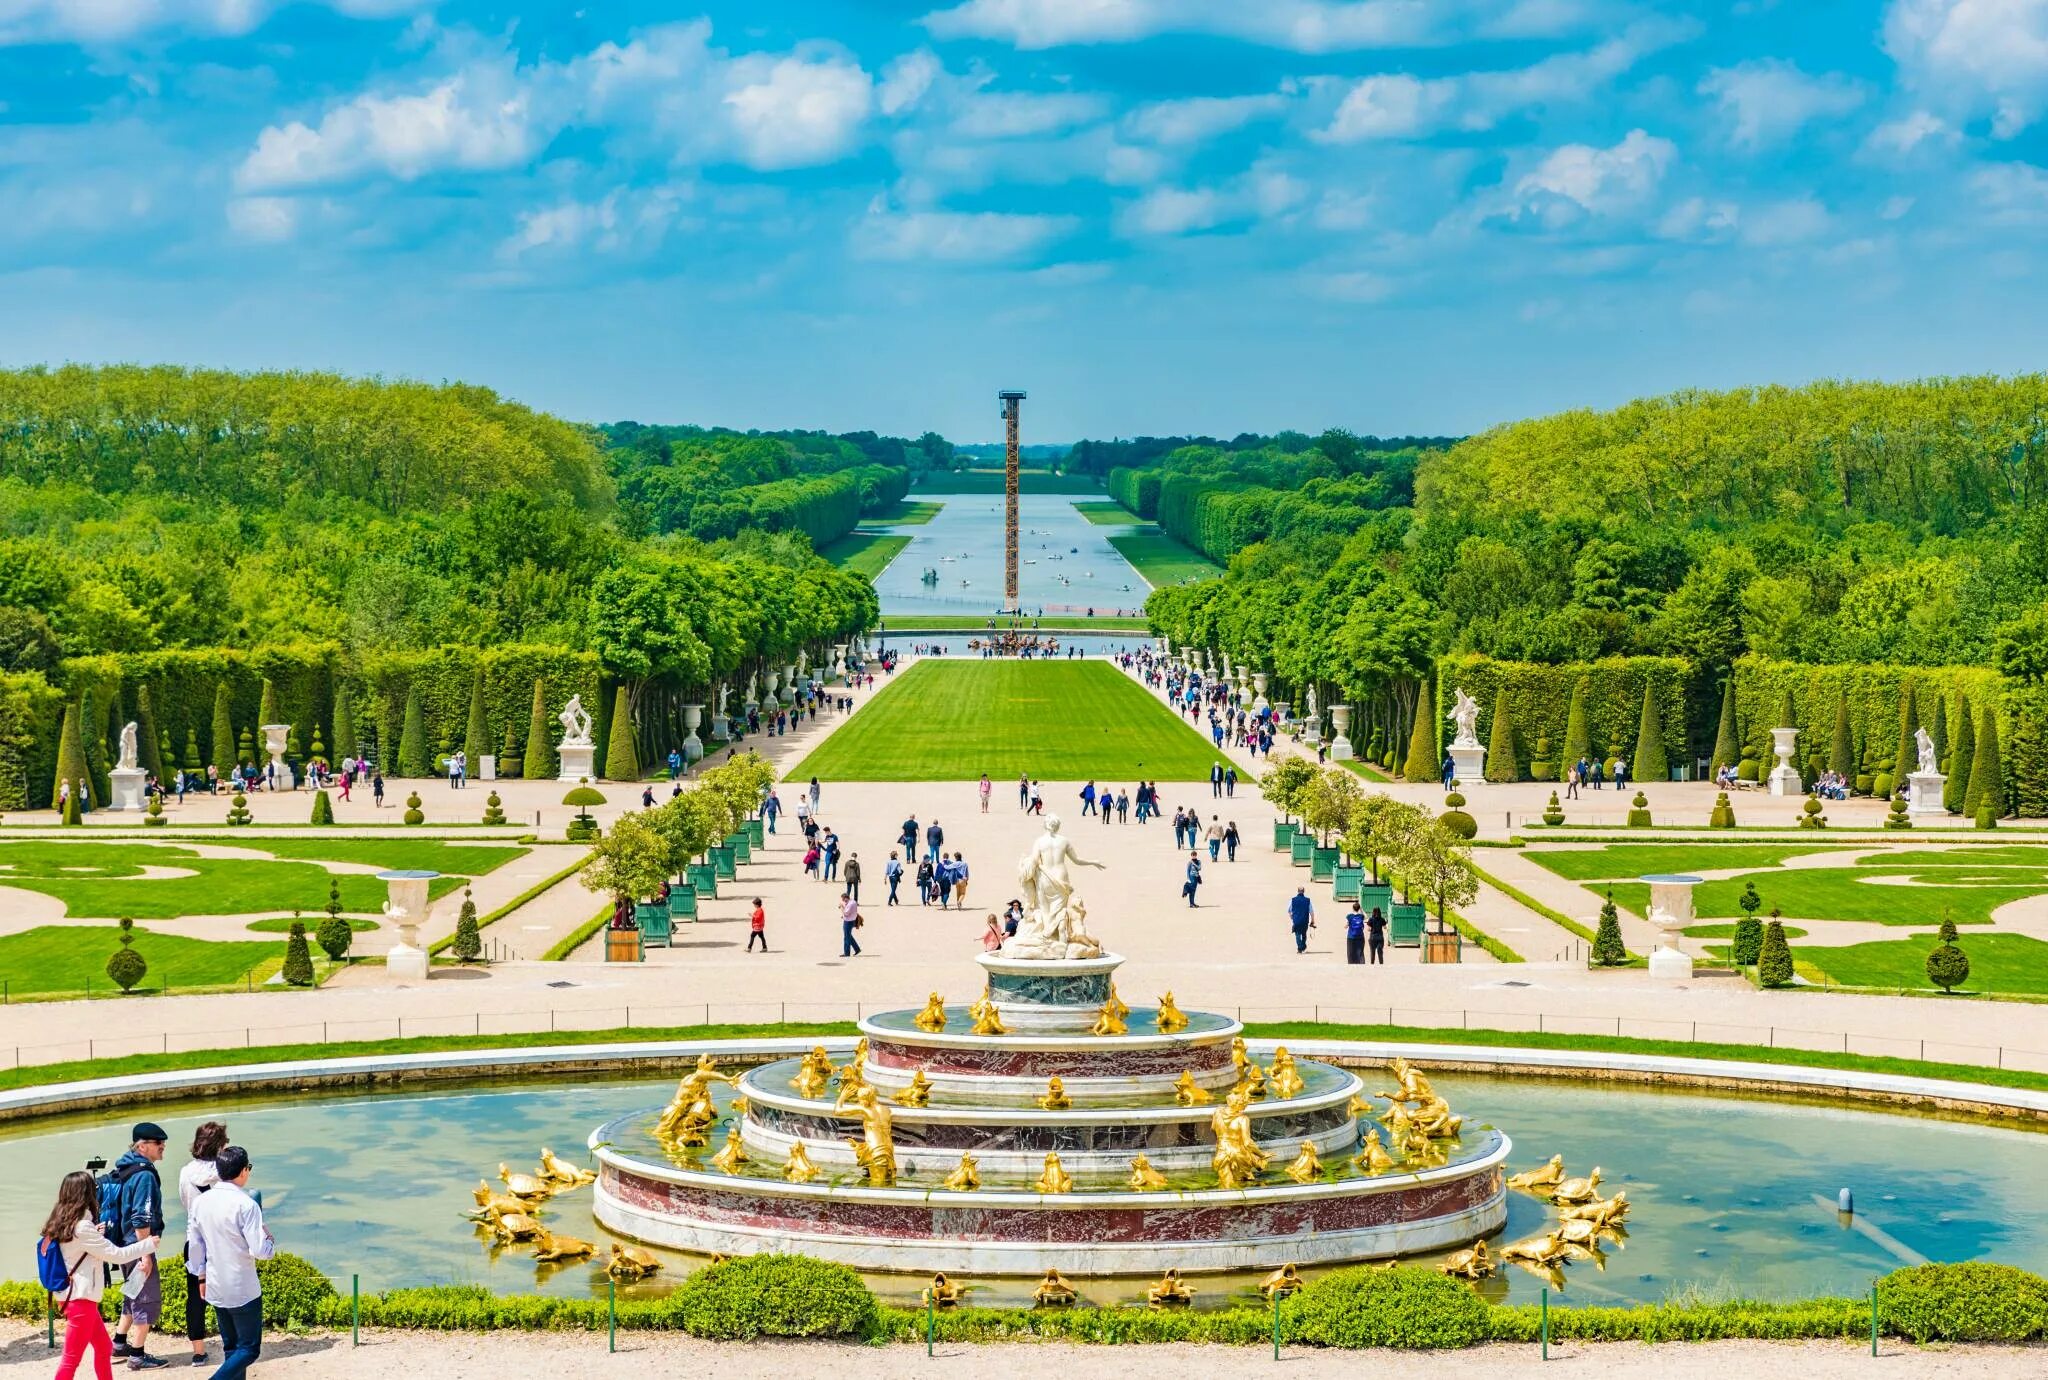 Версальский дворец сады и парки. Версальский дворец Версаль Франция. Парк Версаль в Париже. Дворец и парк в Версале Франция. Chateau versailles